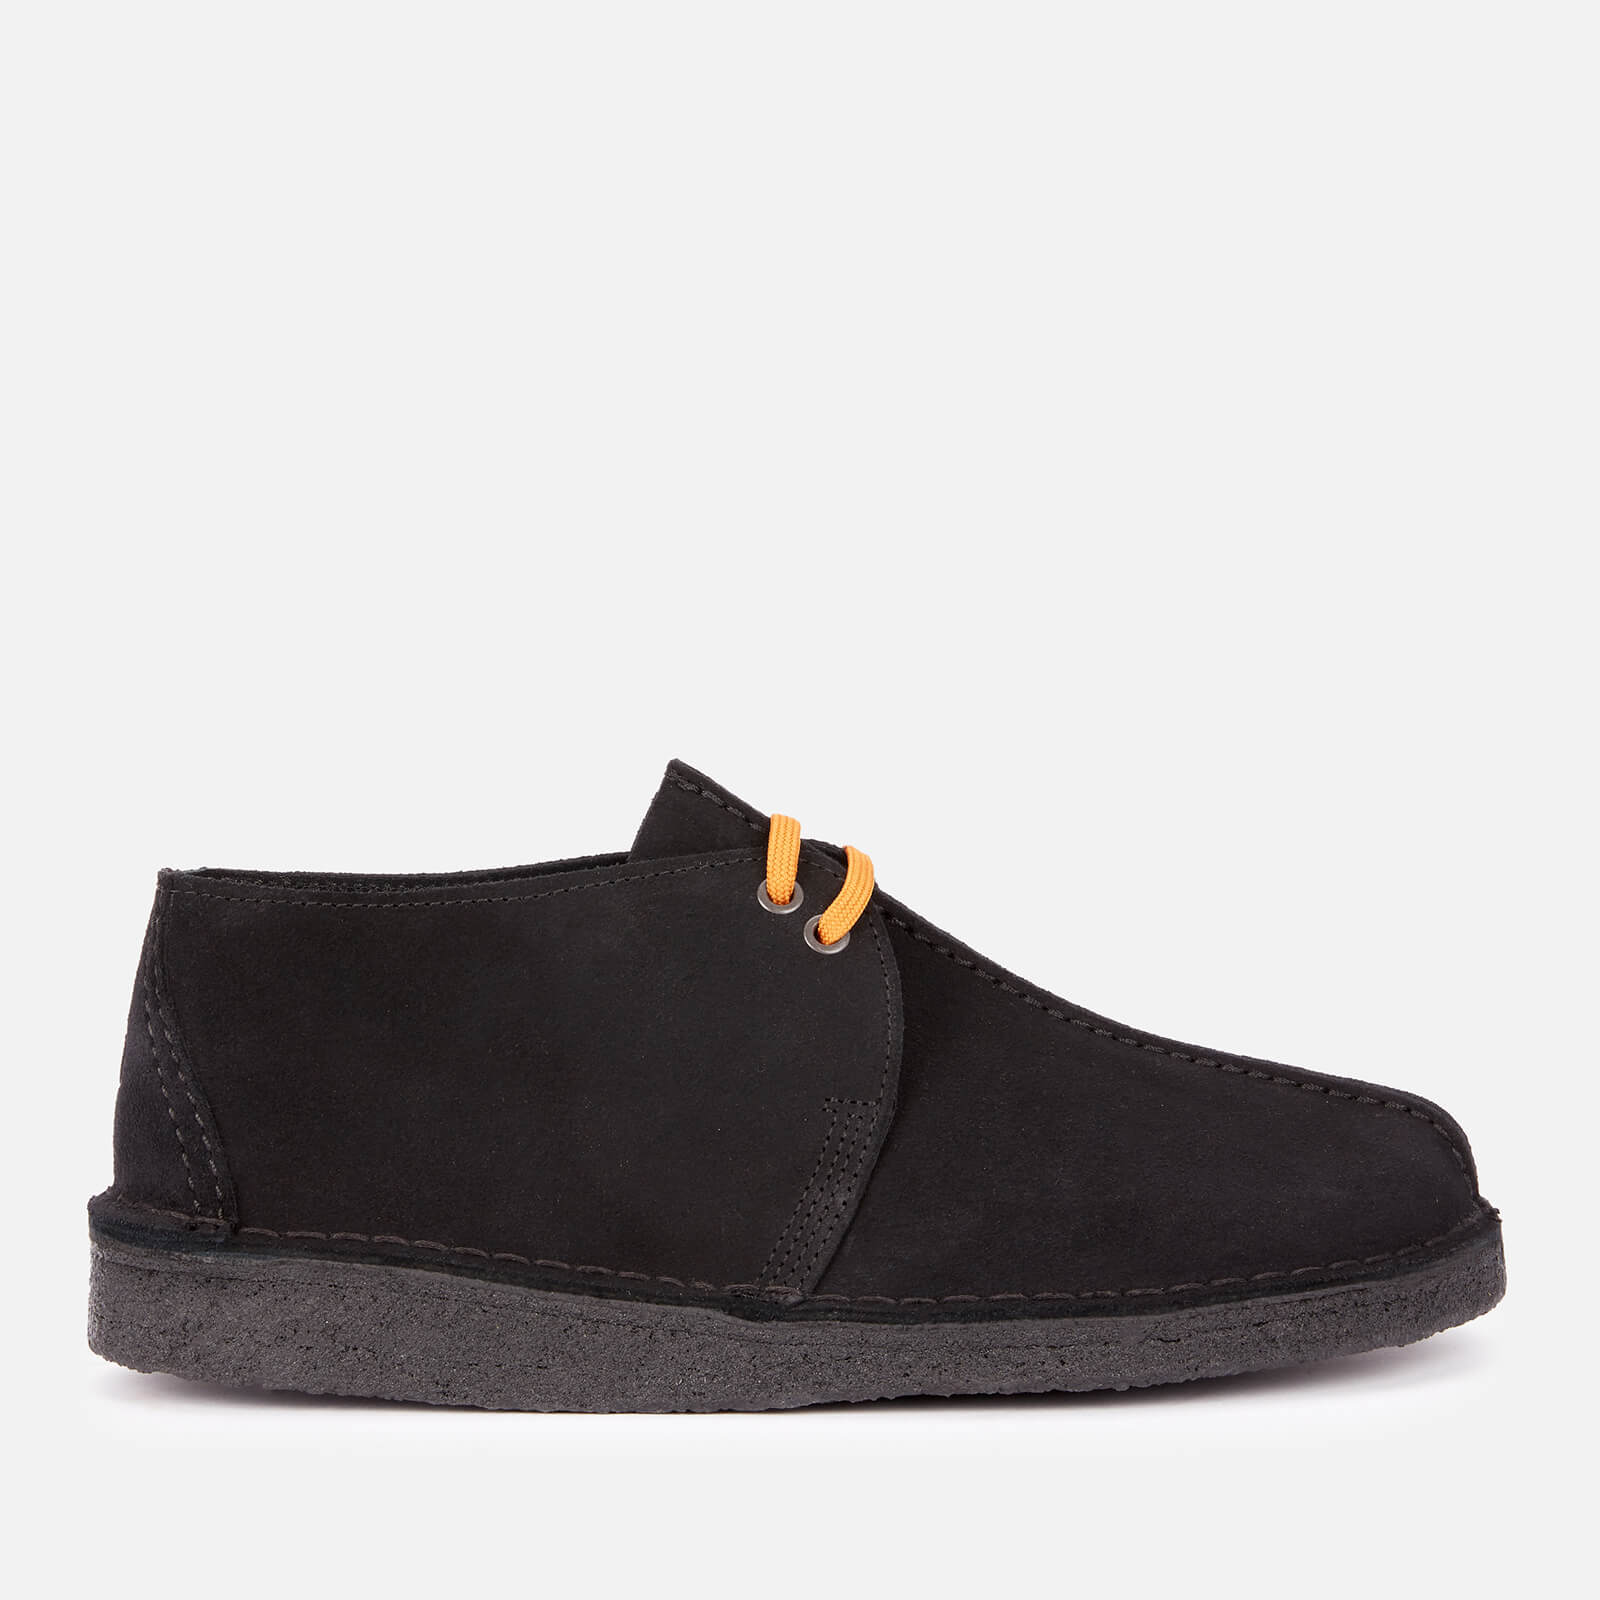 Clarks Originals Men’s Desert Trek Suede Shoes - Black